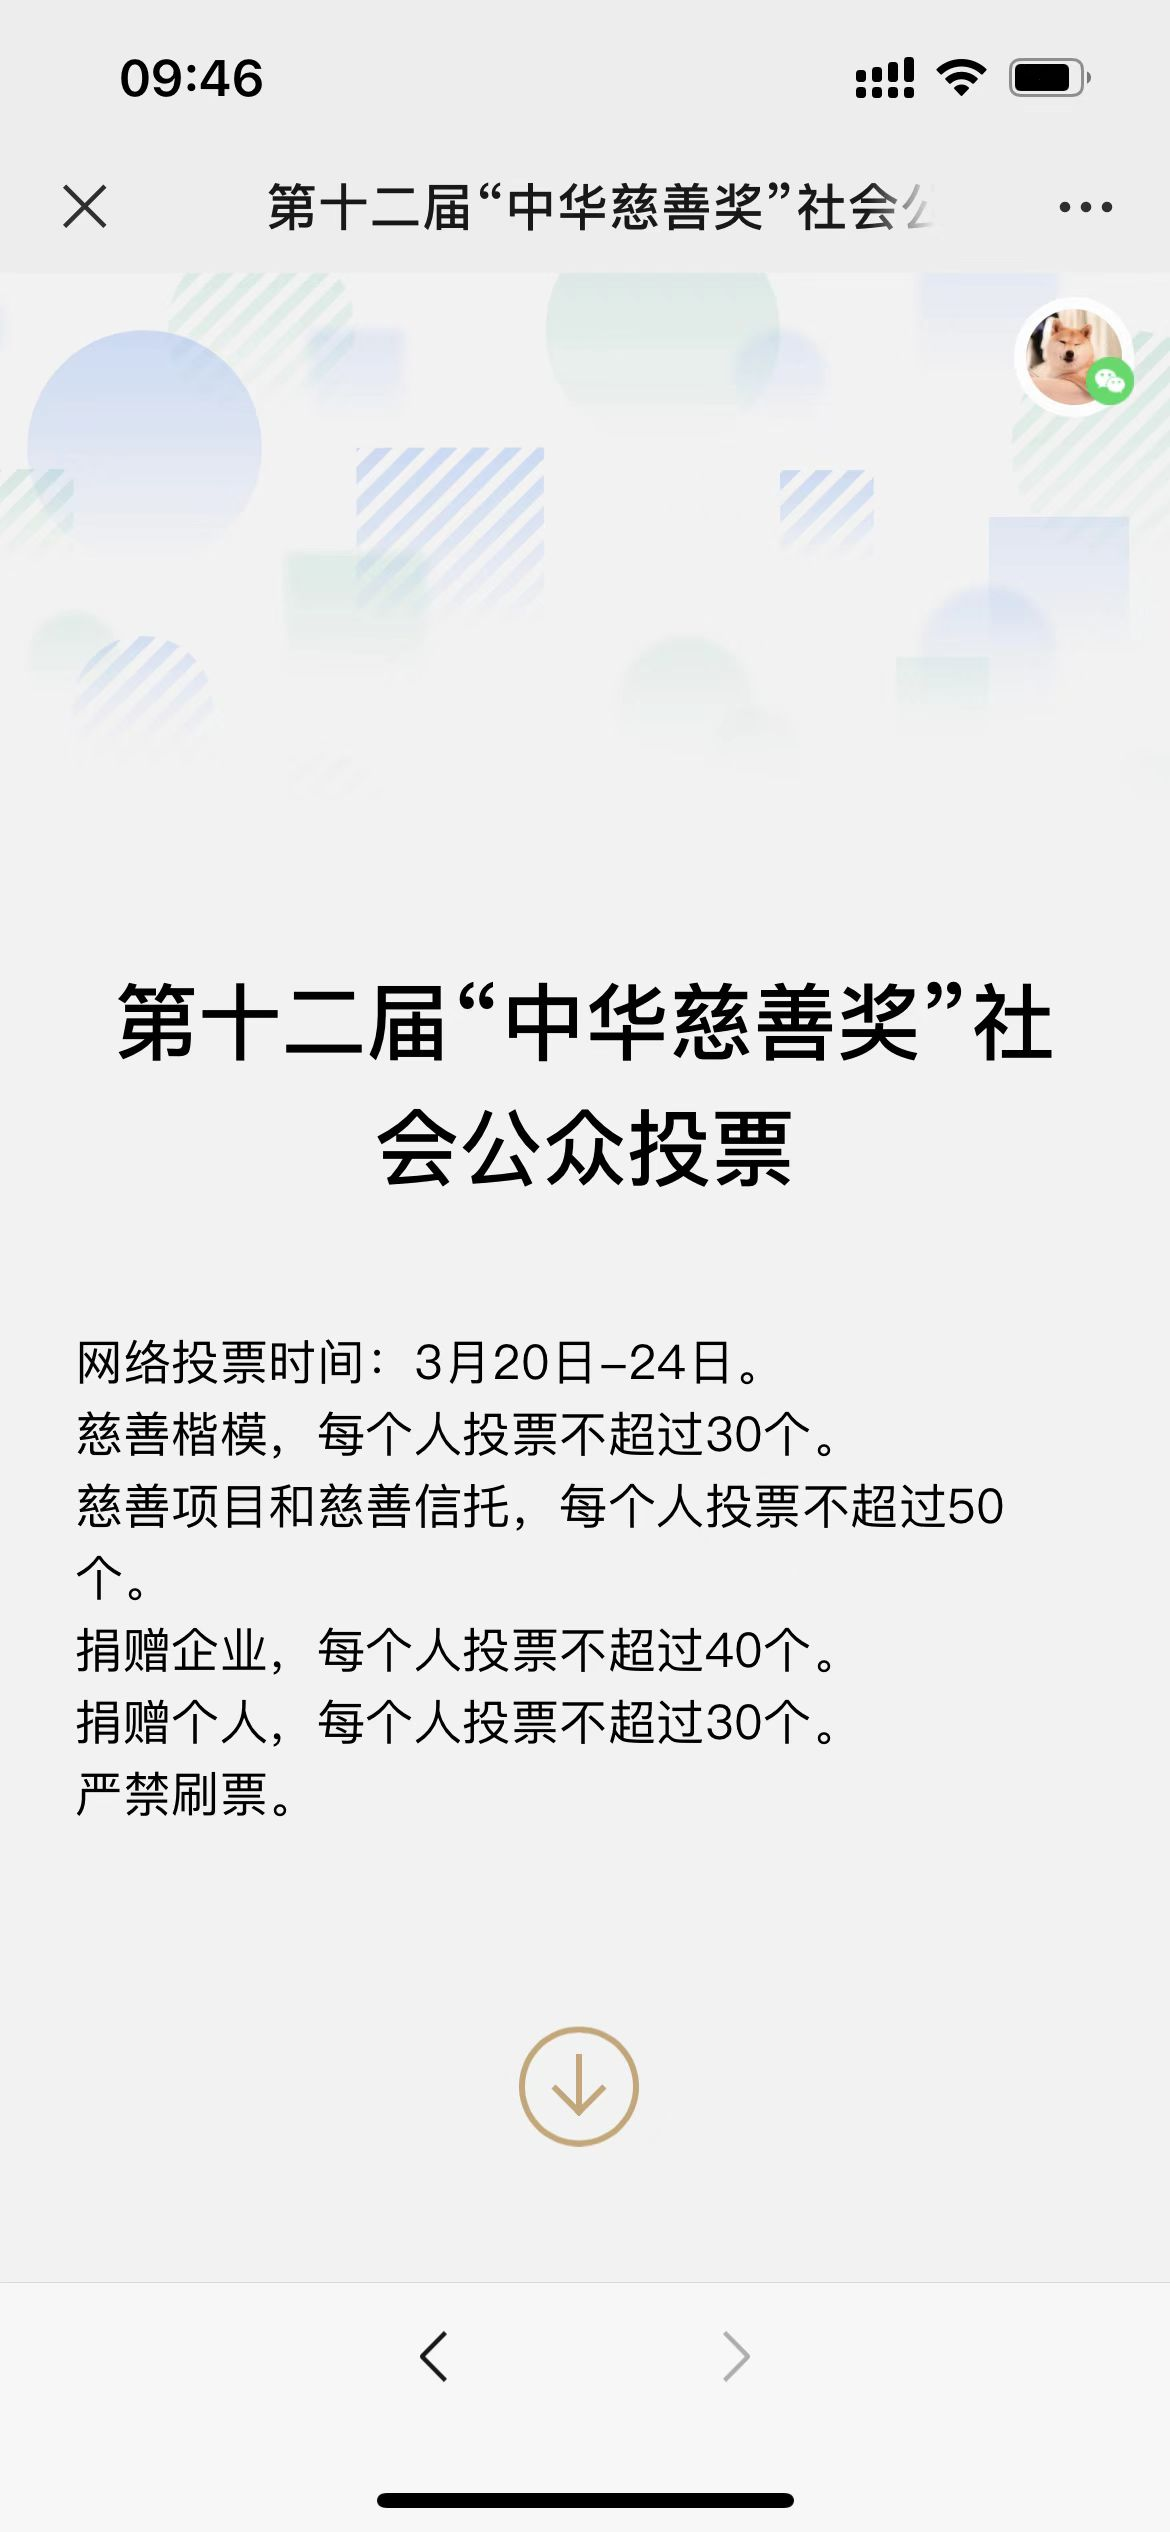 青年企业家 SUKA品牌创始人李庆南入选辽宁省“第十二届中华慈善奖”候选对象